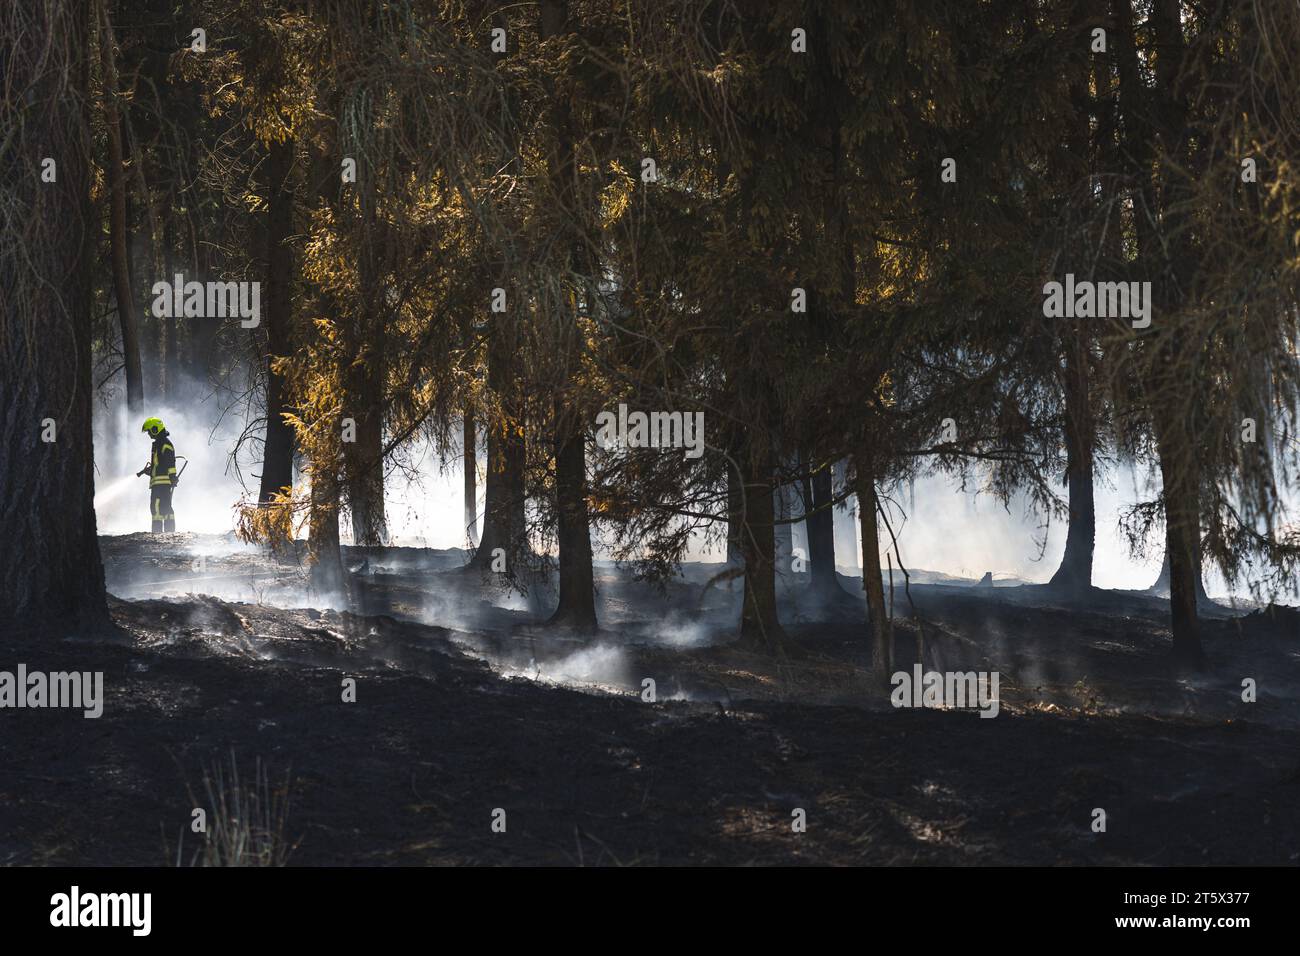 Ein Feuerwehrmann bekämpft einen Waldbrand. Rauch steigt auf, der Waldboden ist völlig verbrannt Stock Photo